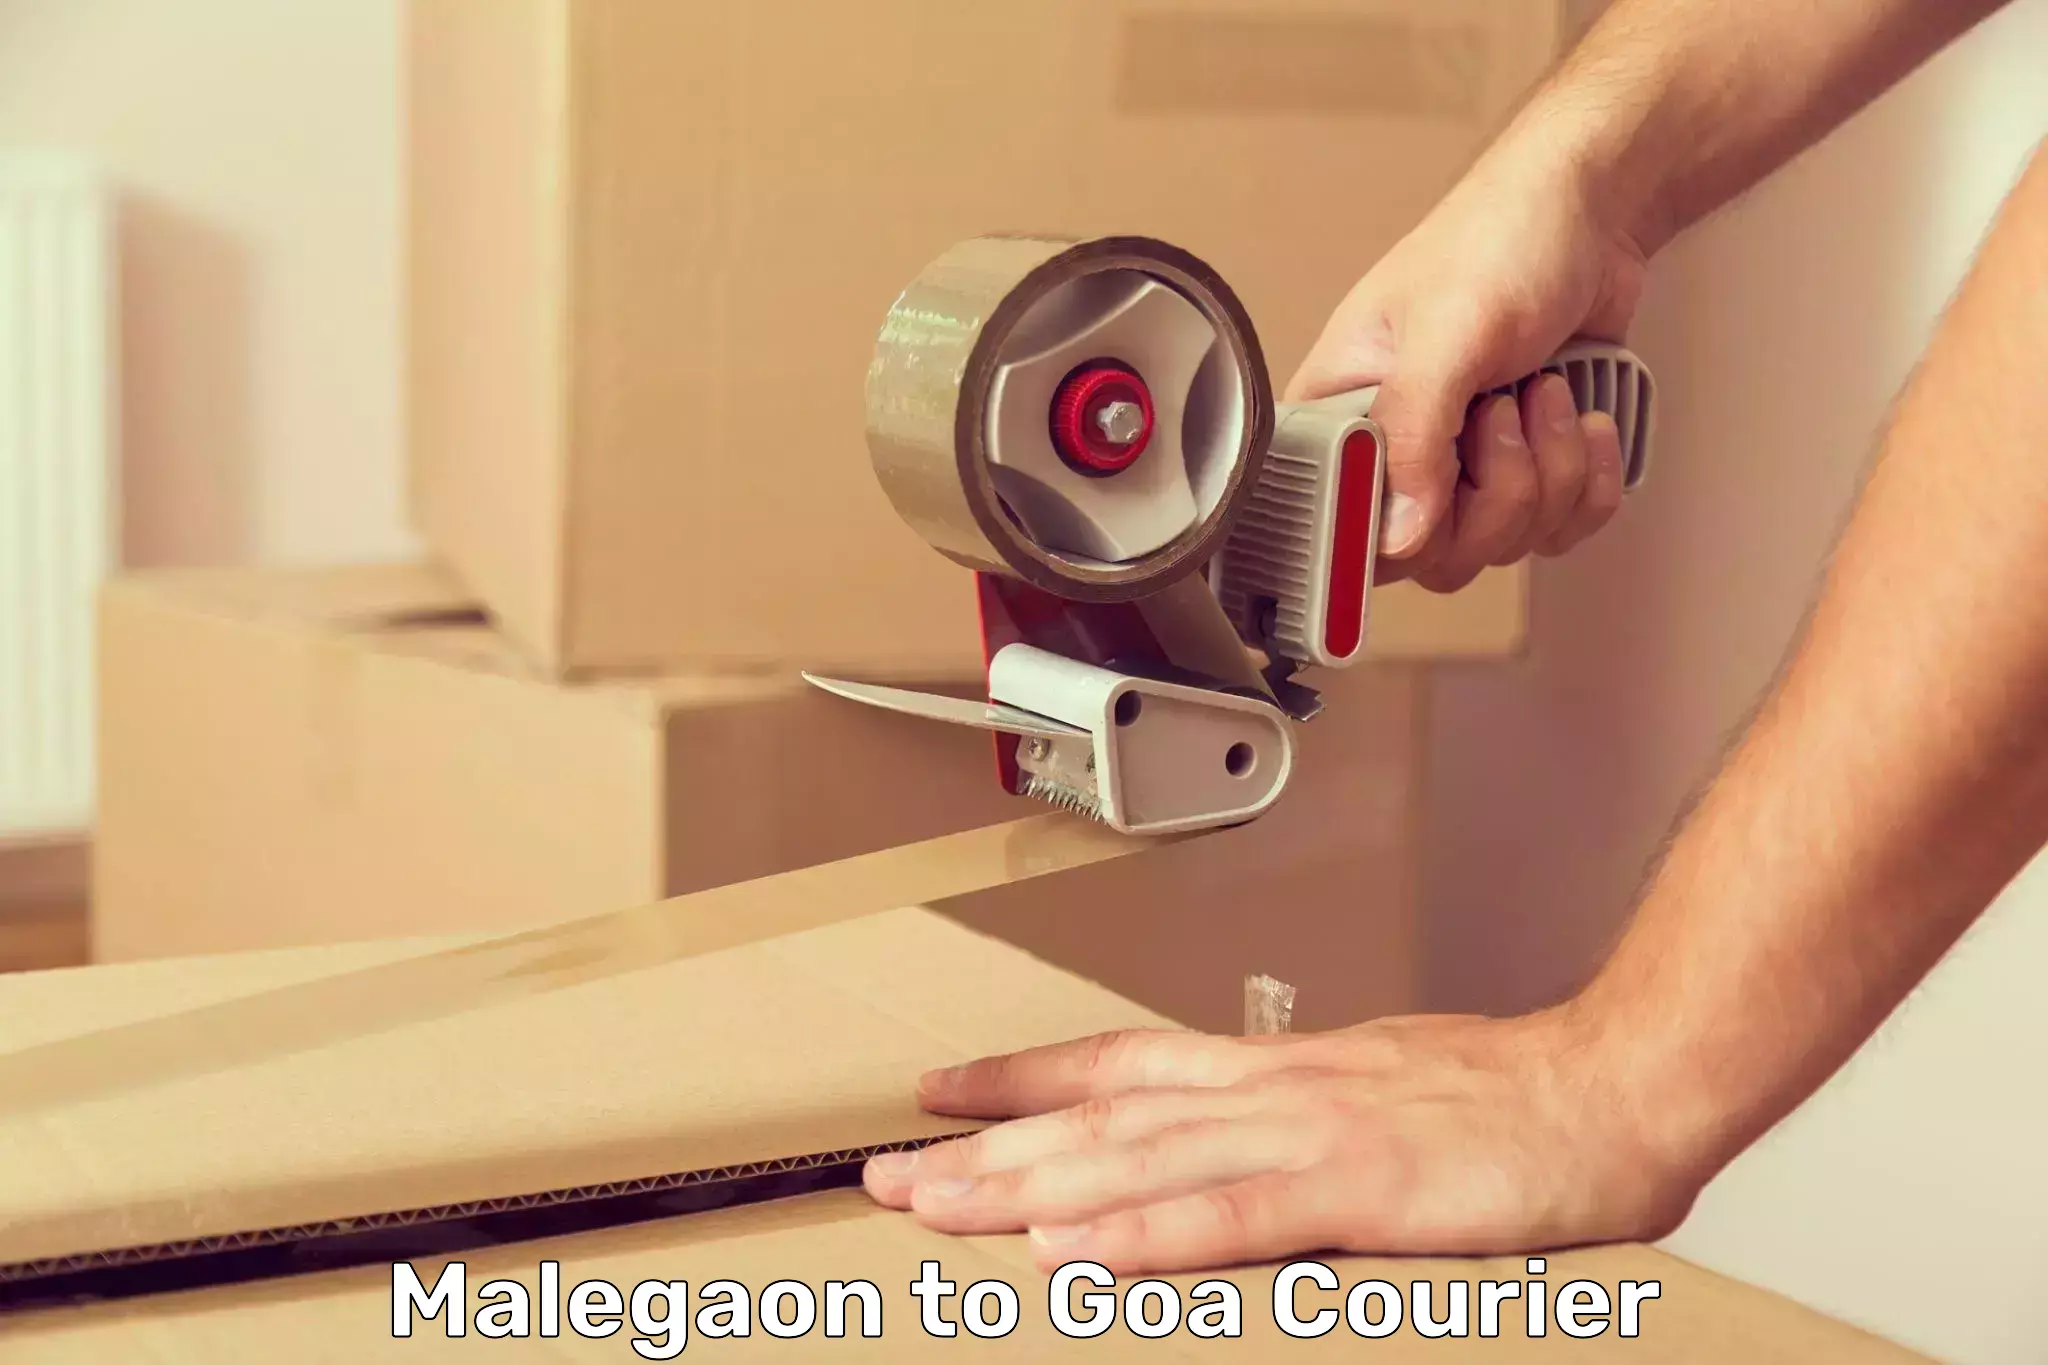 Courier app Malegaon to Goa University